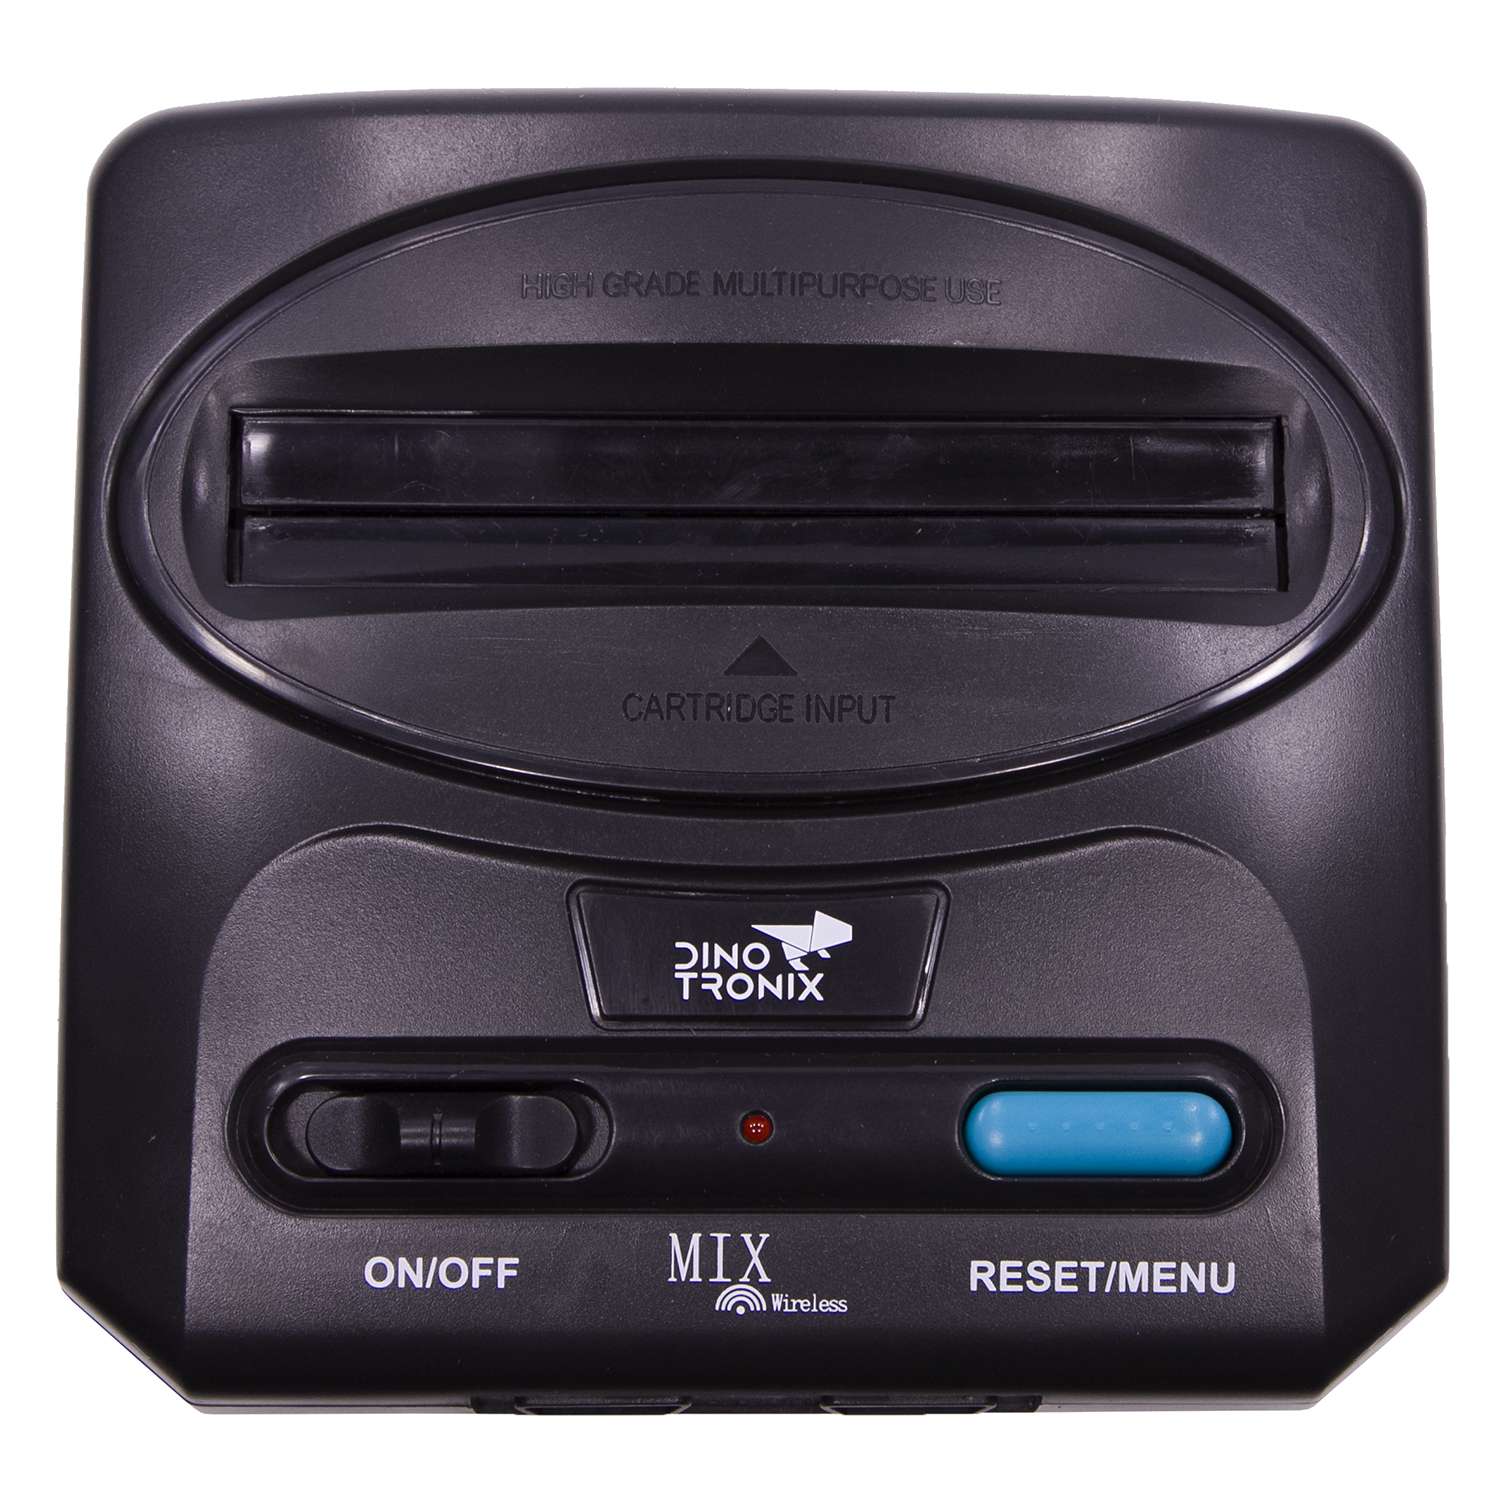 Игровая приставка для детей Retro Genesis Dinotronix Mix Wireless + 600 игр AV 2 беспроводных джойстика - фото 4